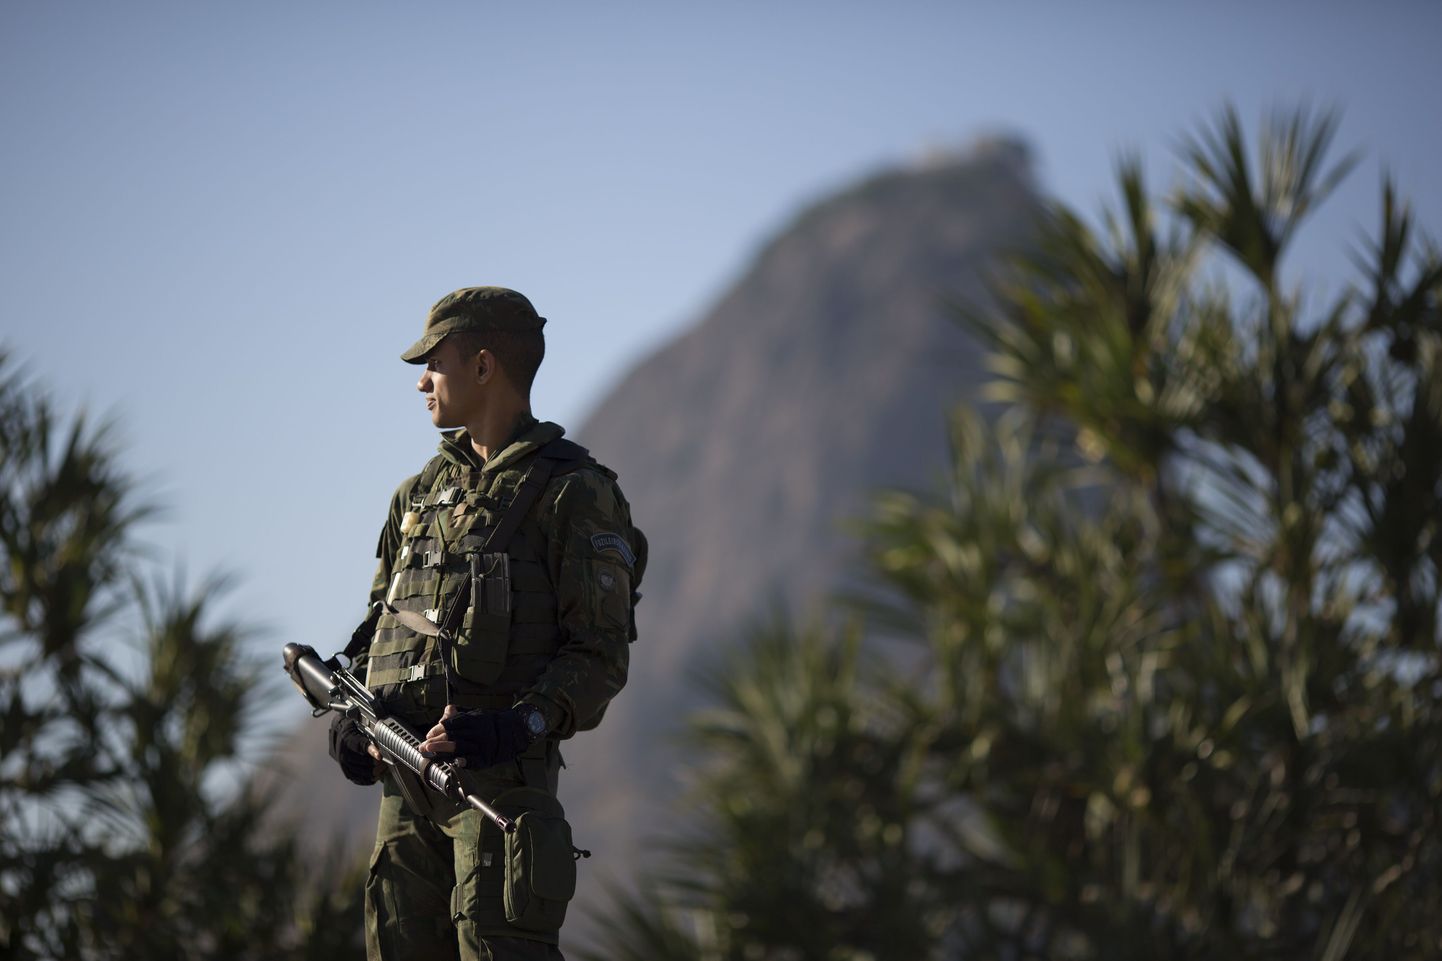 Rio de Janeiros, Brasiilias patrulliv sõjaväelane.